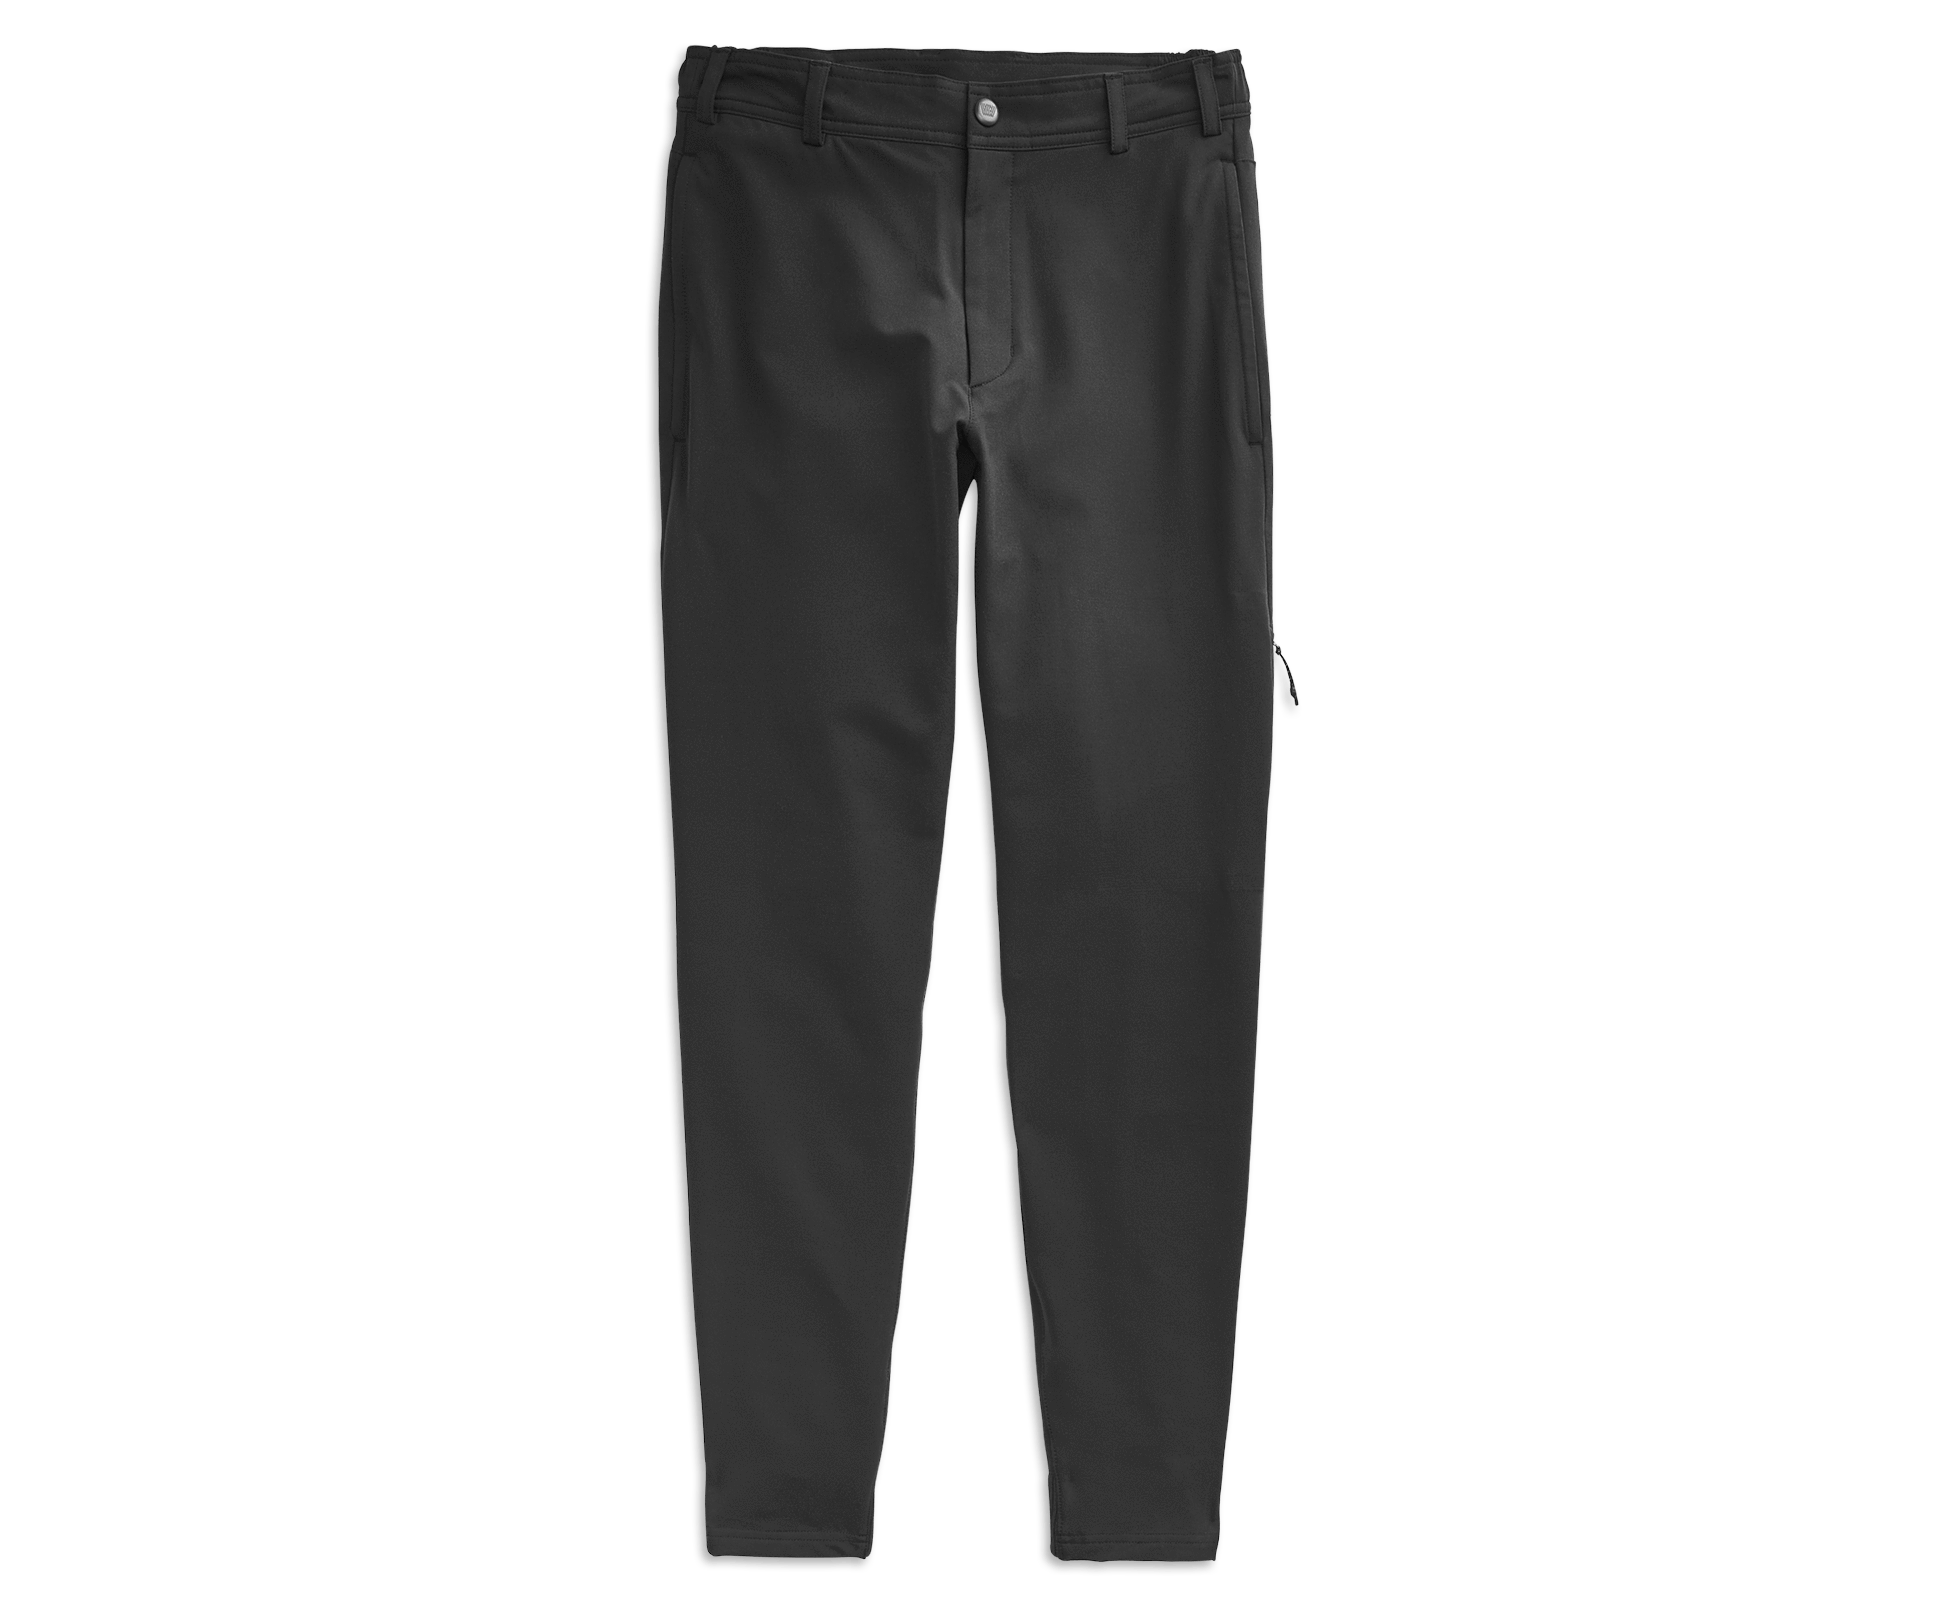 Men's Medical Pants | Dickies Balance (DK220)